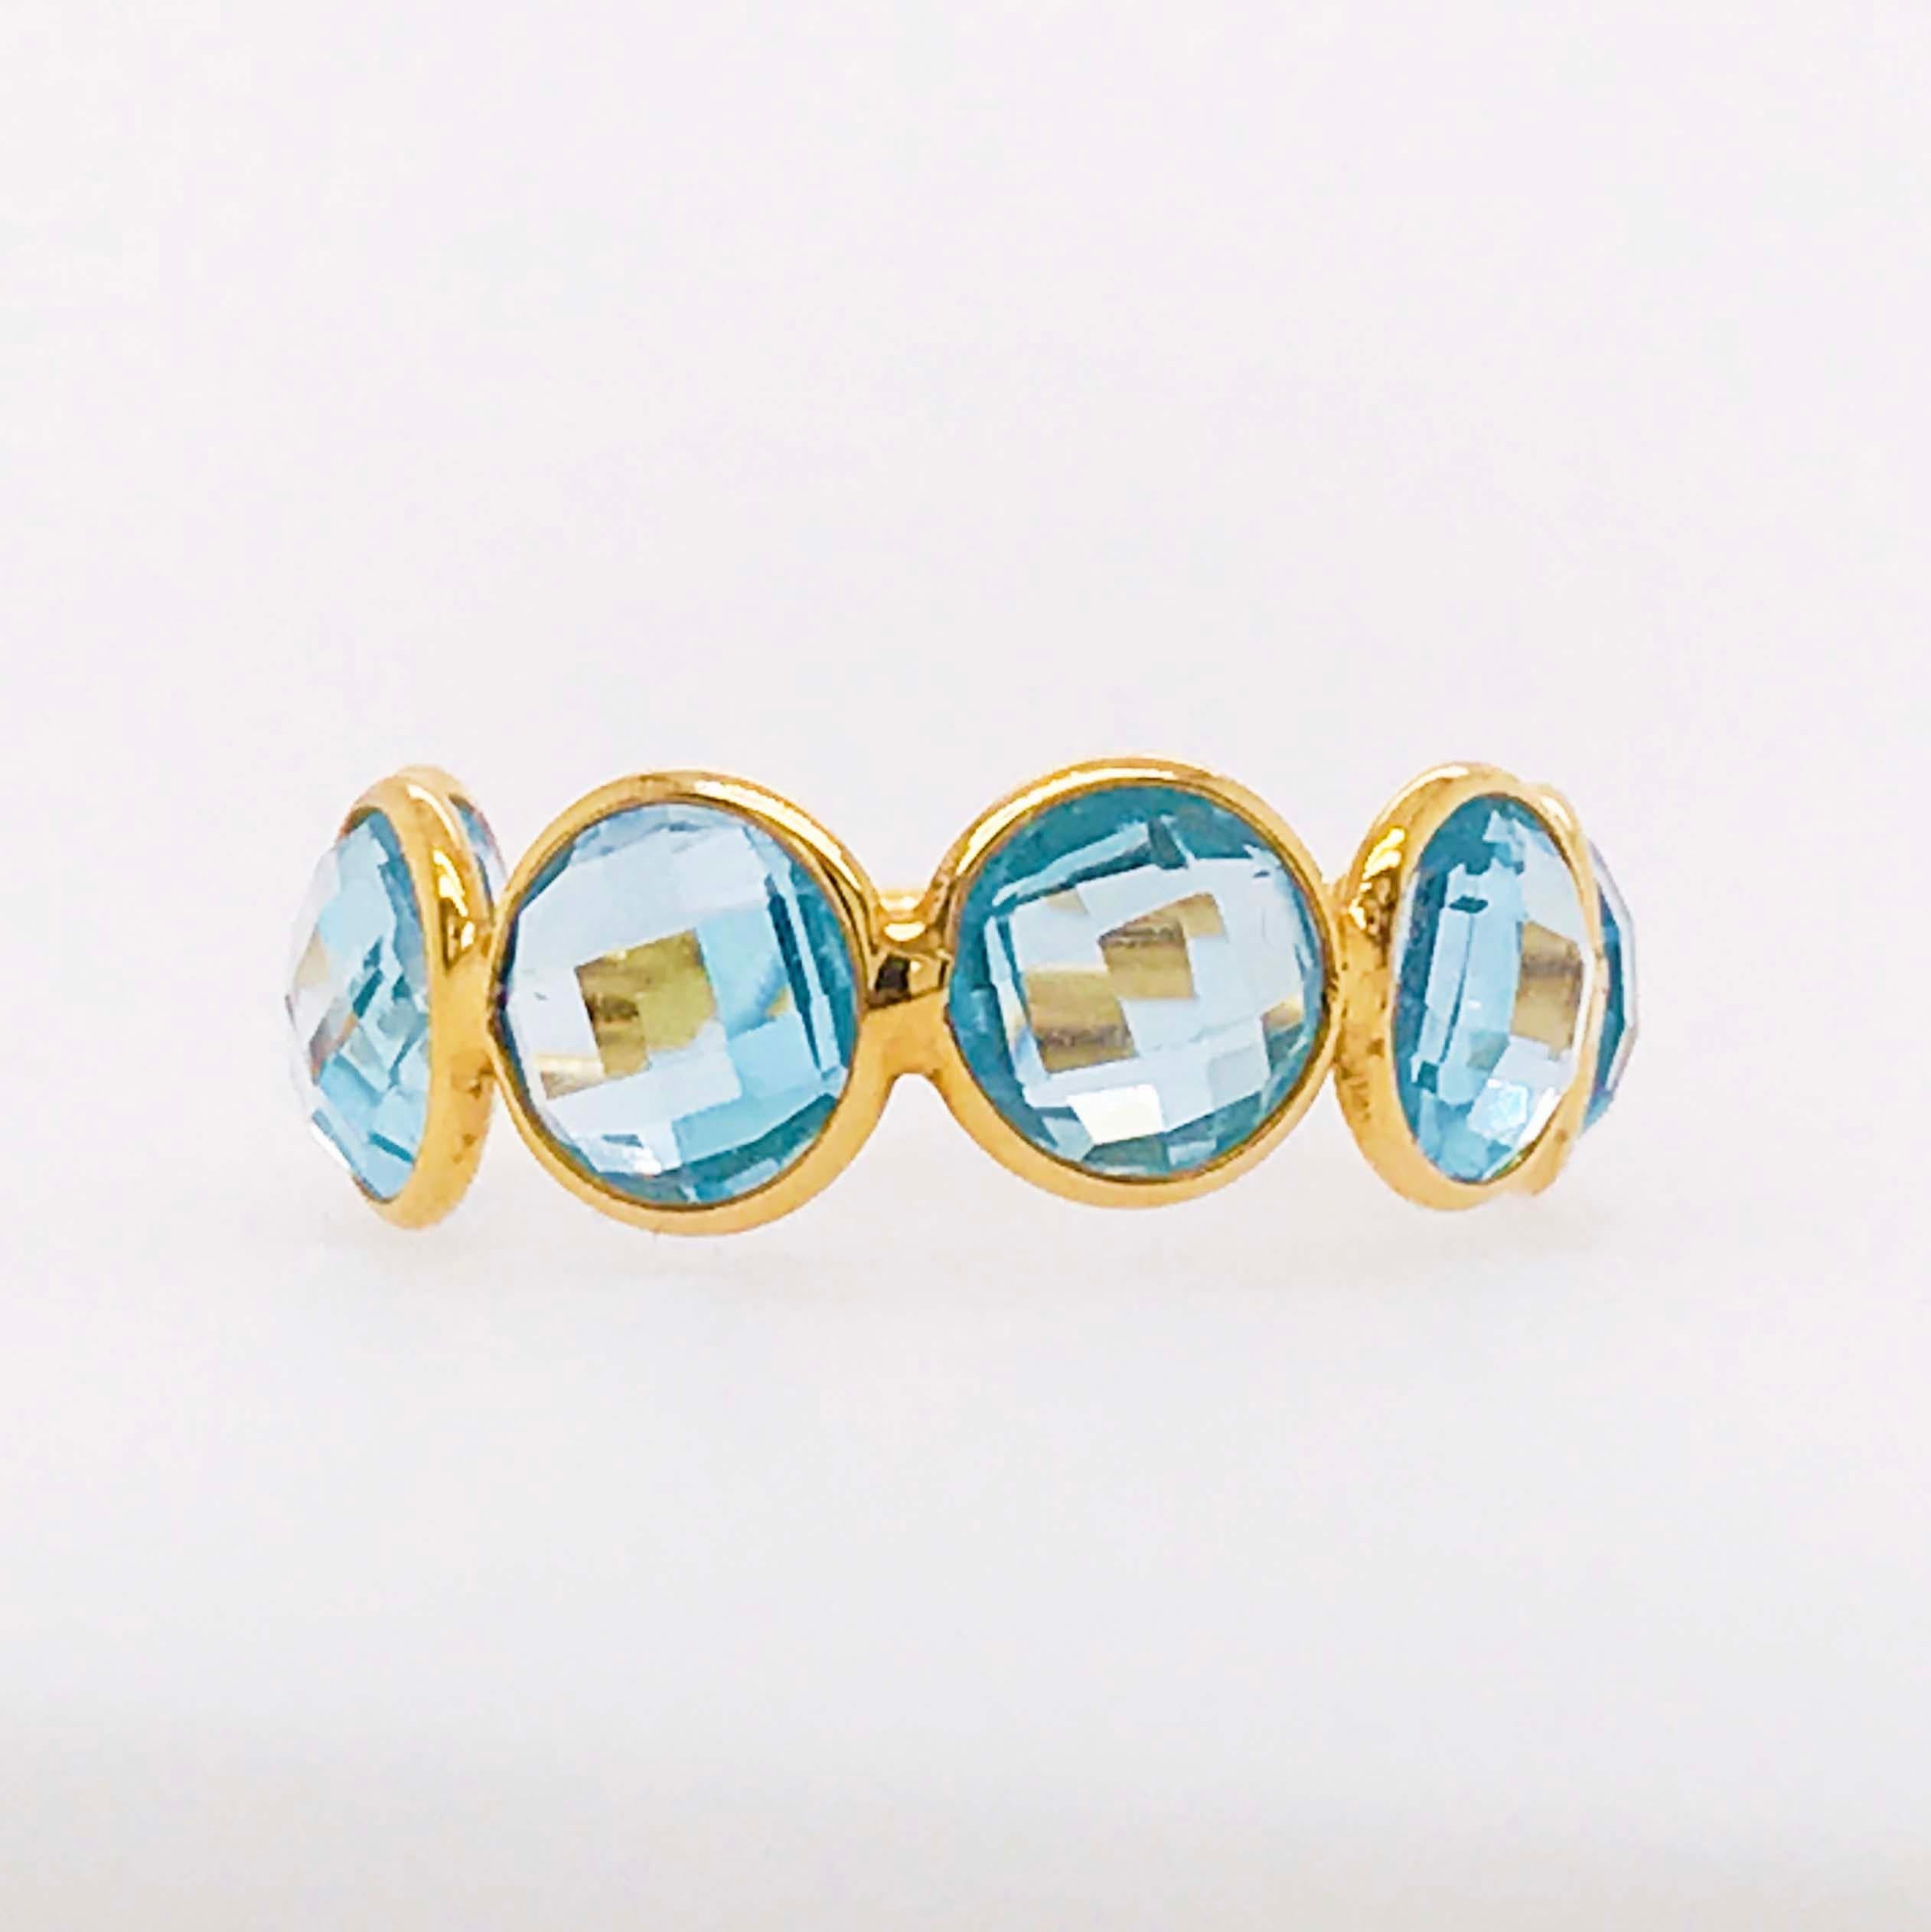 Der verstellbare Ring mit echtem Blautopas ist einzigartig und individuell! Mit echten, natürlichen Blautopas-Edelsteinen, die ¾ des verstellbaren Bandes umschließen, ist dieser Ring mit einem Gesamtgewicht von 6 Karat 